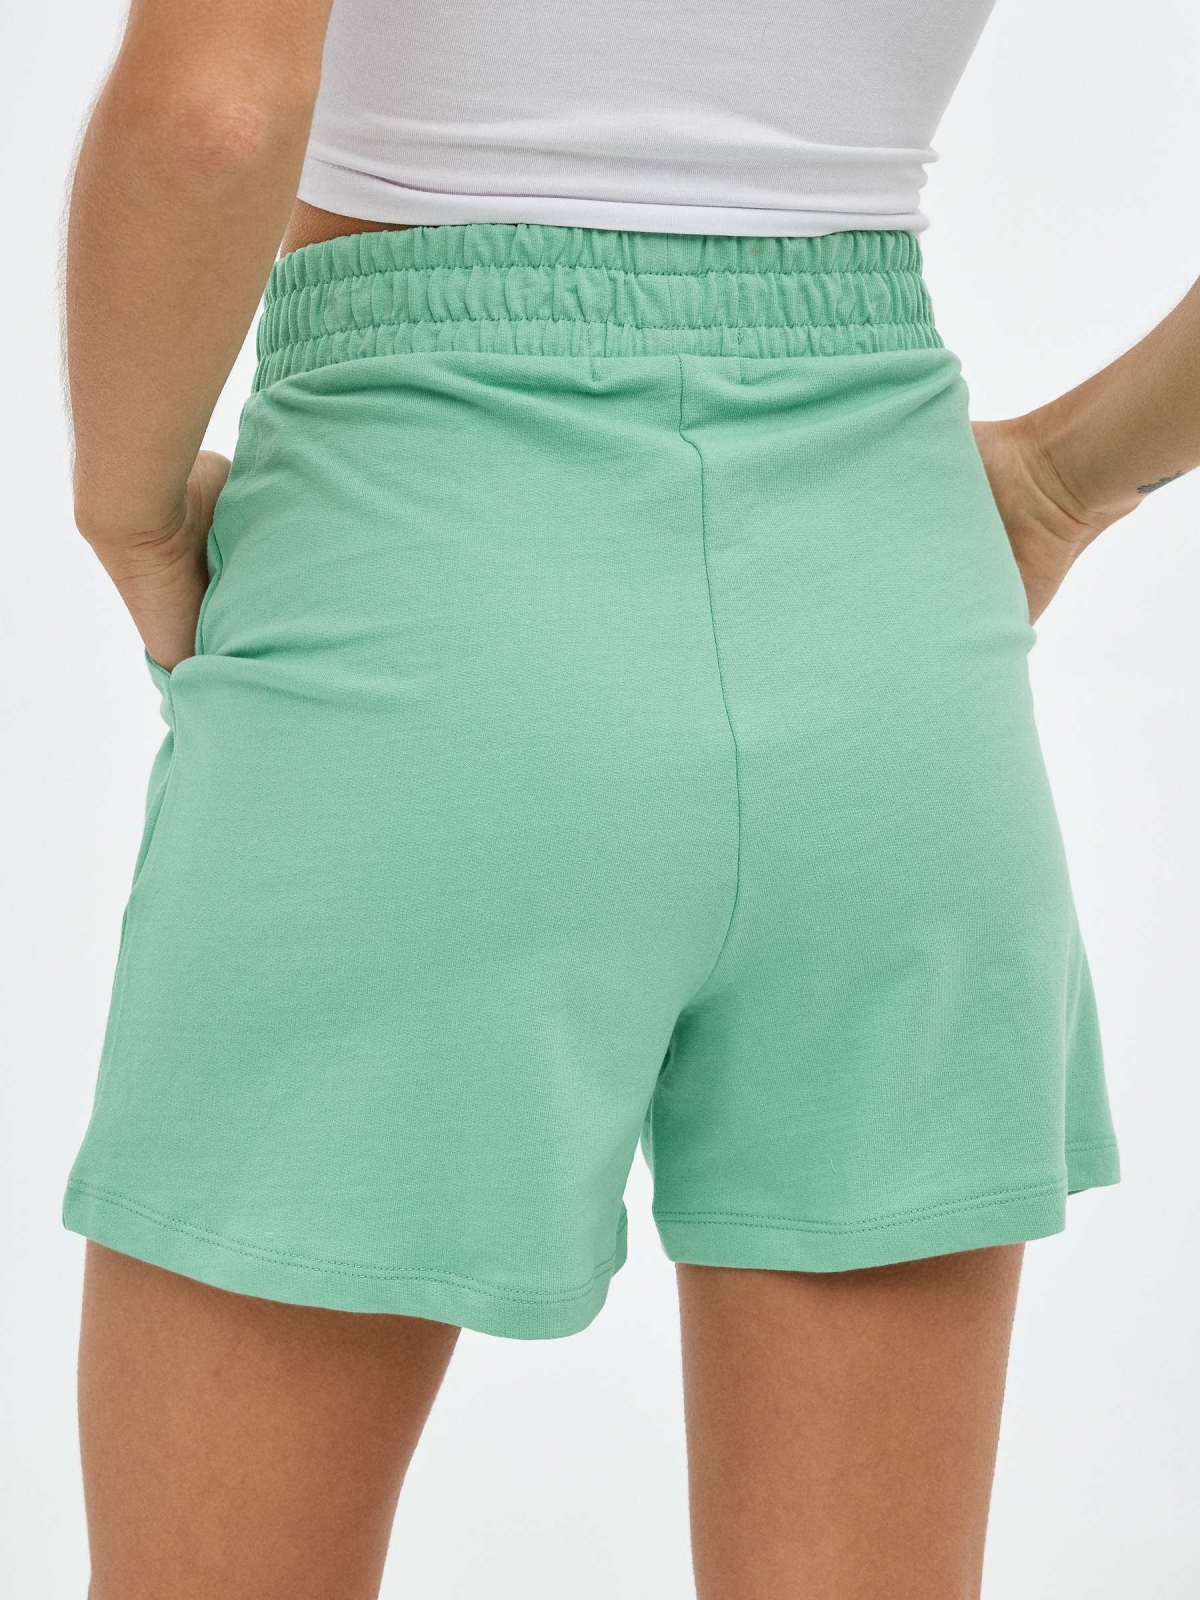 Plush green shorts mint detail view